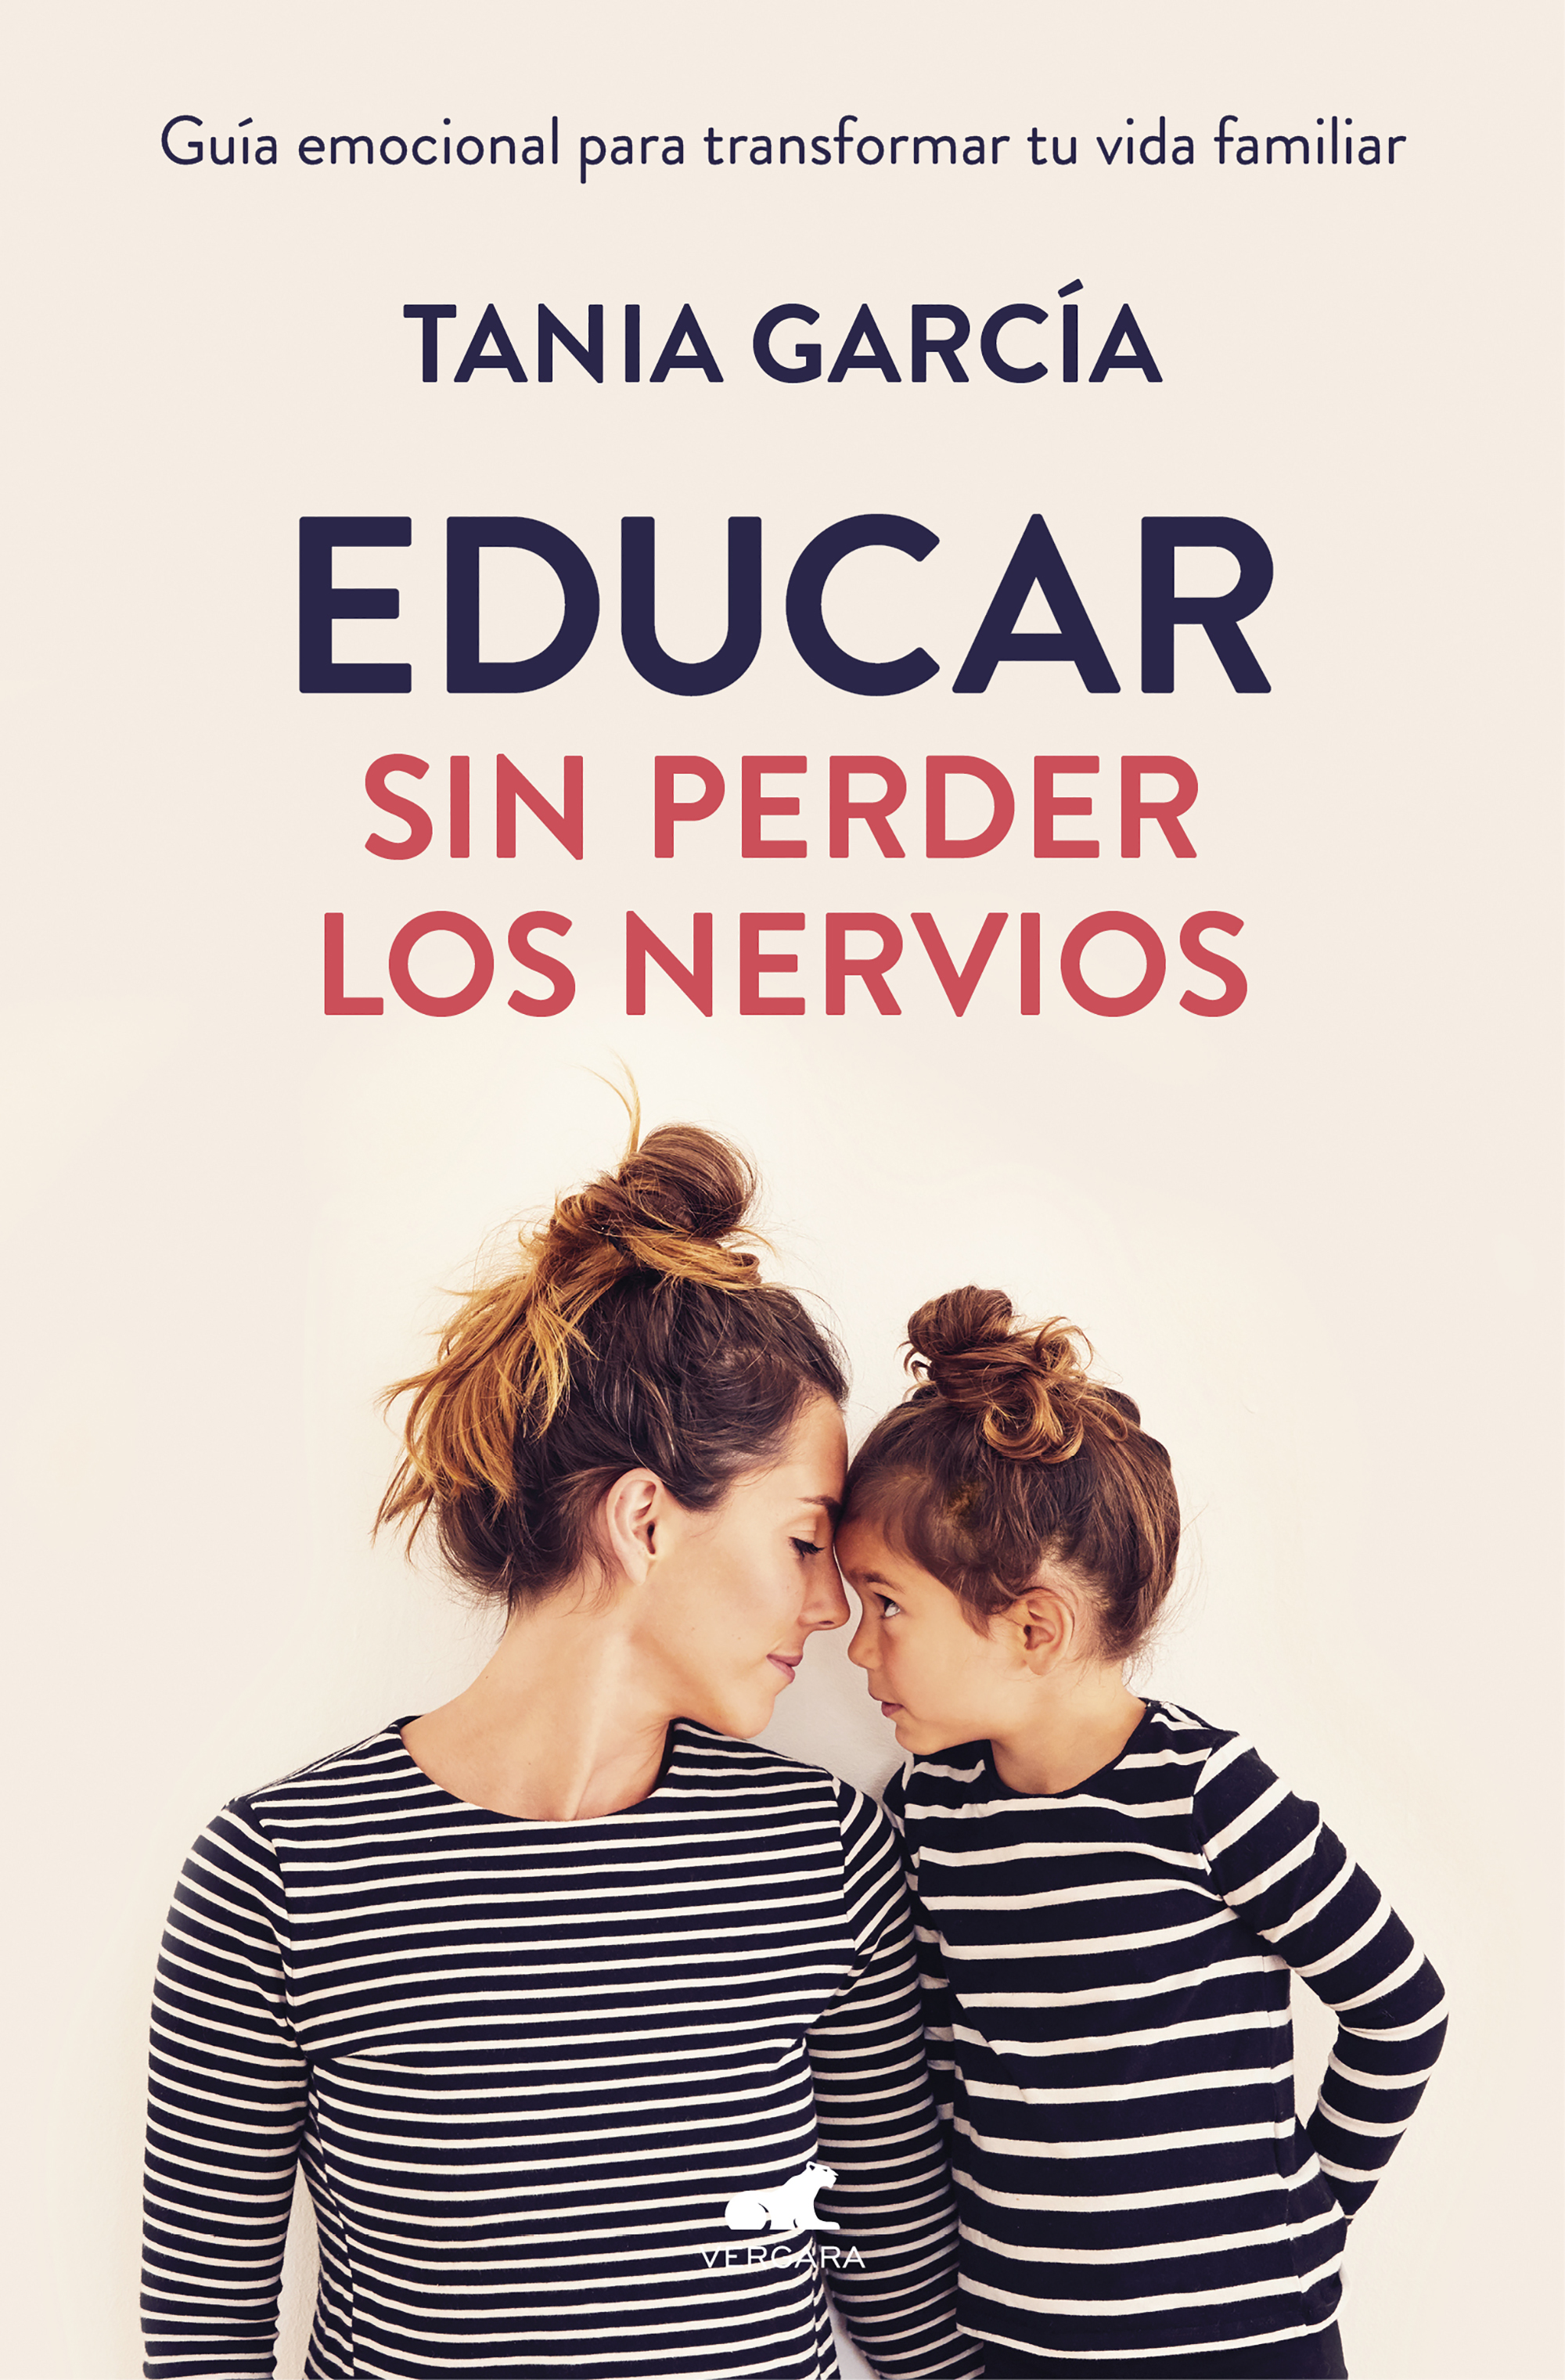 El bestseller de Tania García, "Educar sin perder los nervios" (Editorial Vergara).